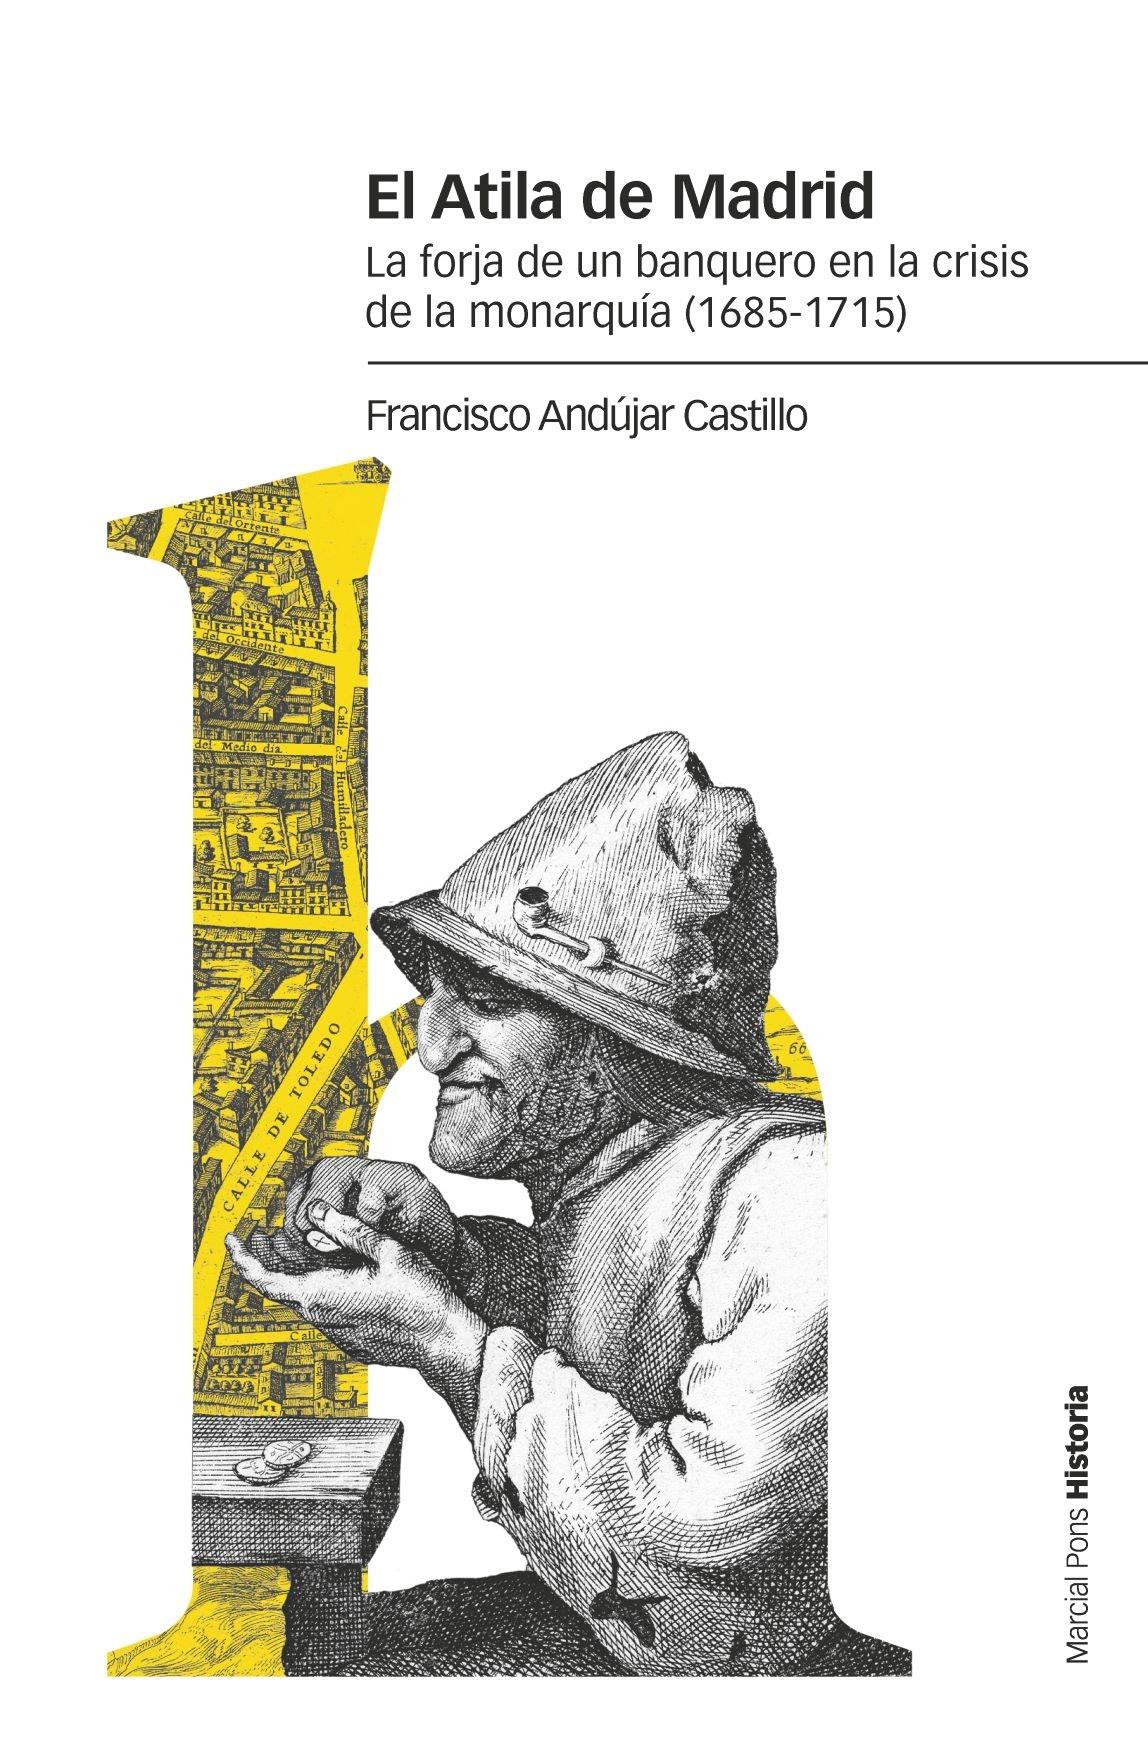 ATILA DE MADRID, EL "LA FORJA DE UN BANQUERO EN LA CRISIS DE LA MONARQUÍA (1685-1715)"